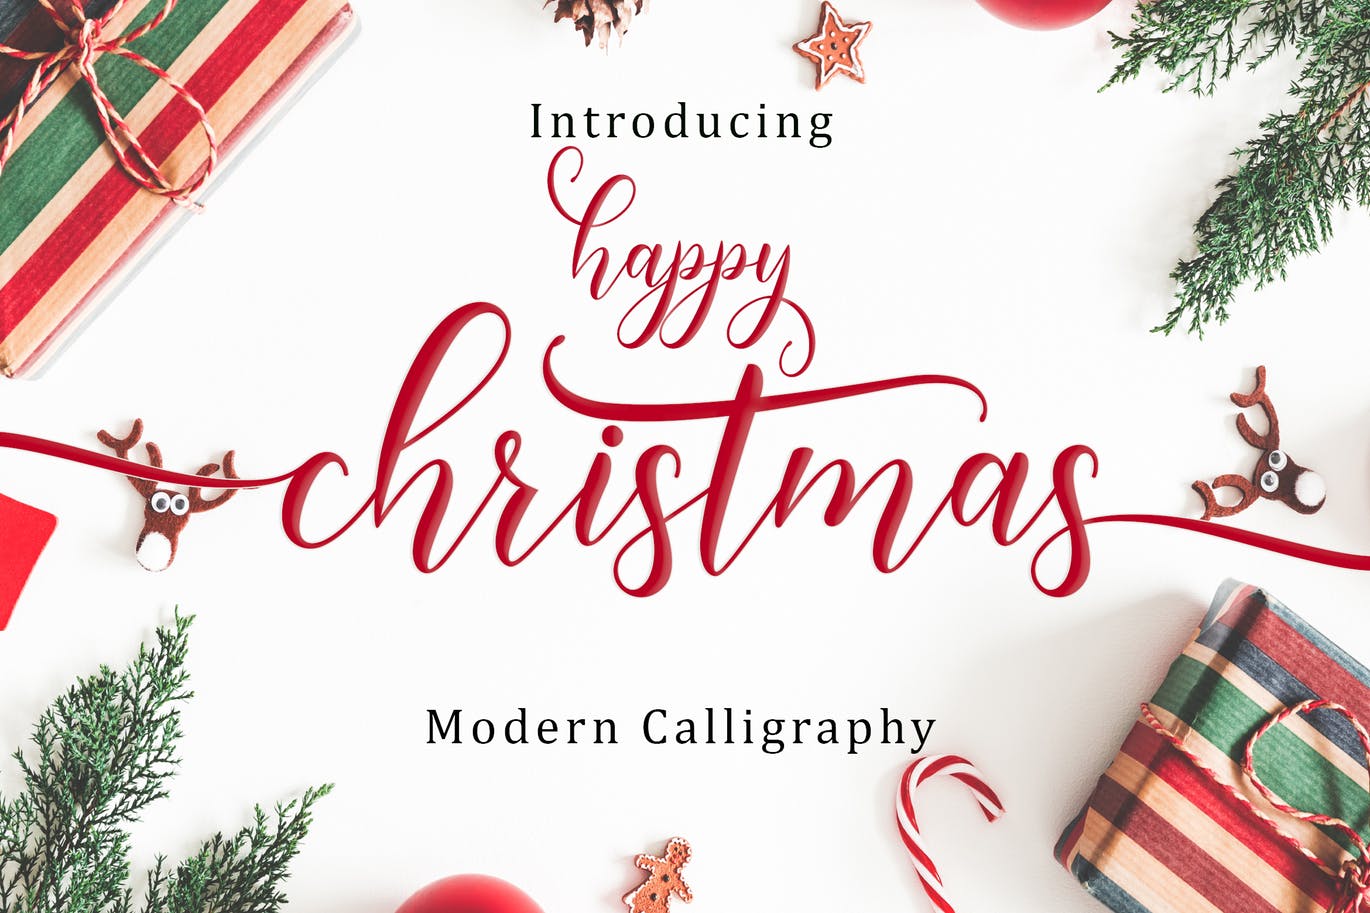 现代书写风格圣诞节主题英文草书字体happychristmasscript